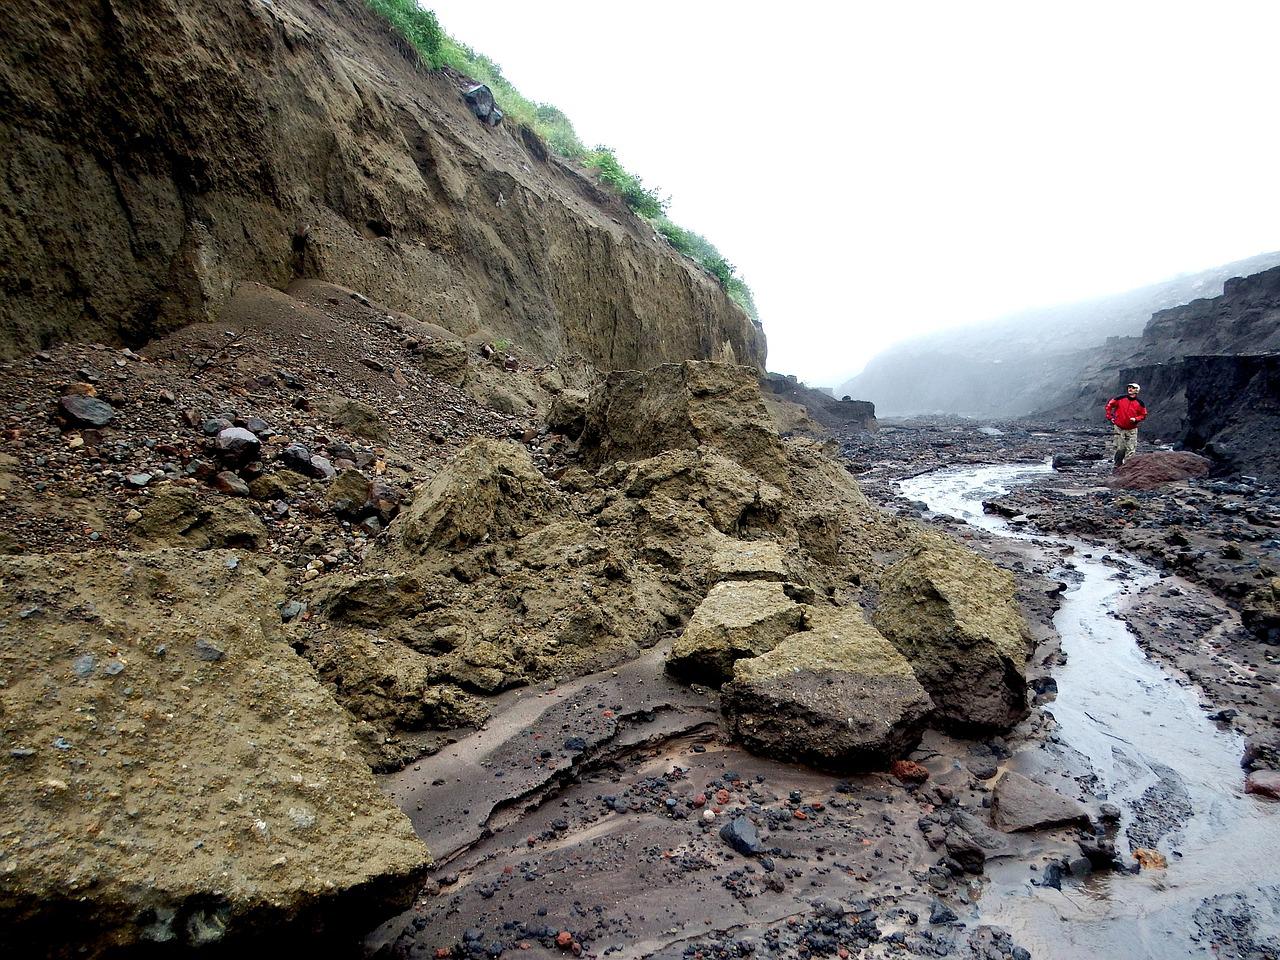 Участок республиканской автодороги смыло водным потоком в Алматинской области